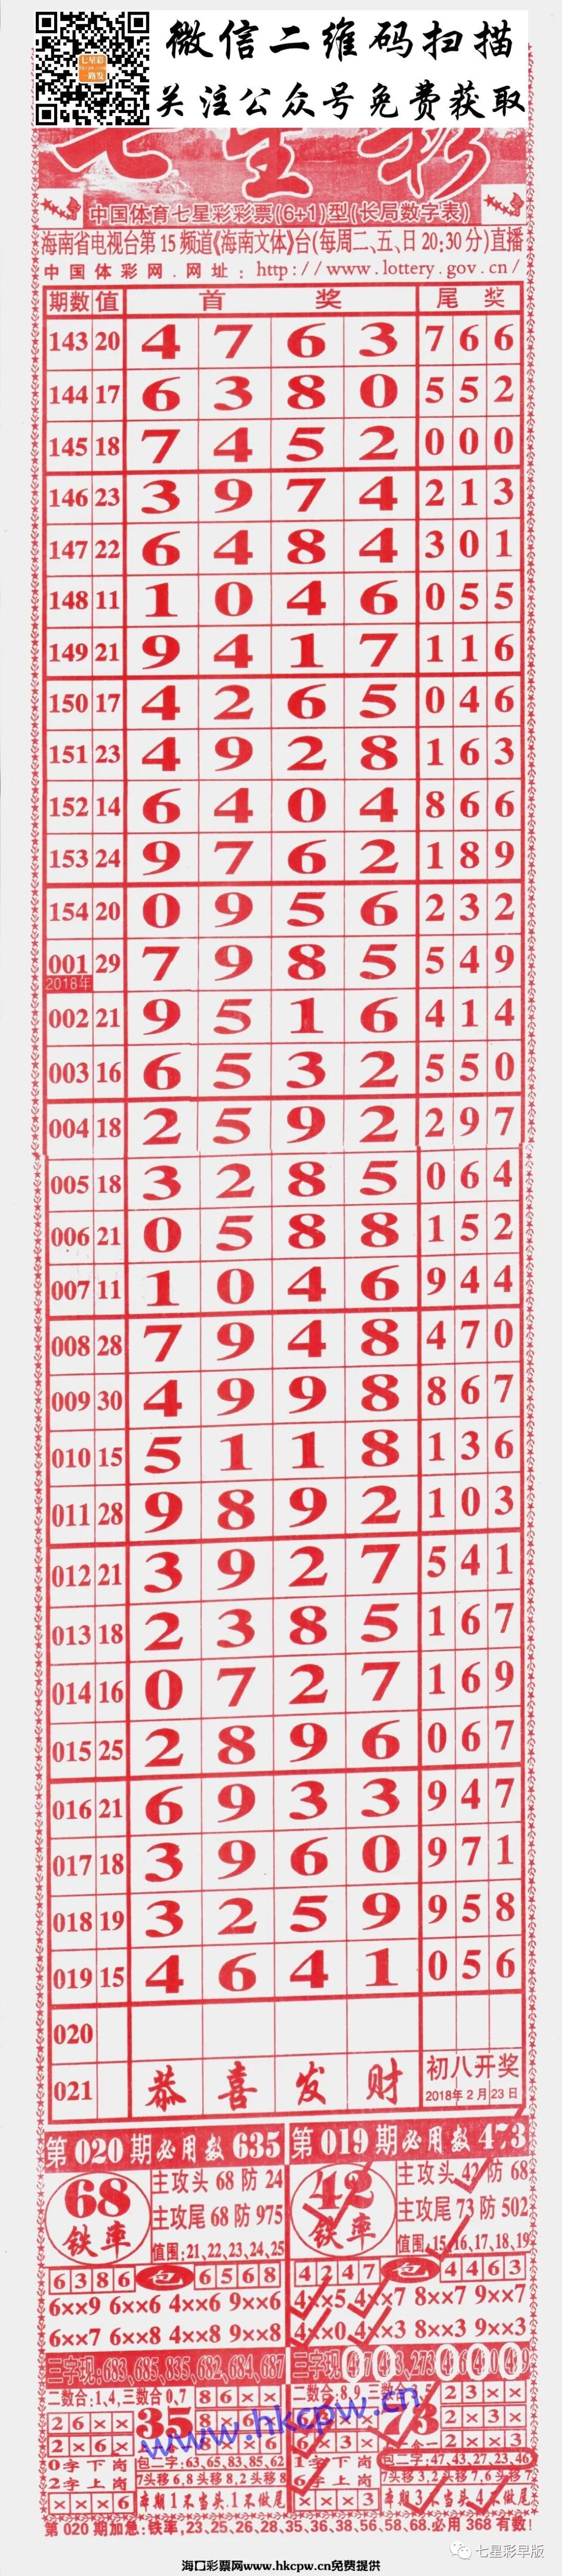 2113期七星彩长条:808,粤海局王,至尊,三点红,利民总版,新加坡对手等